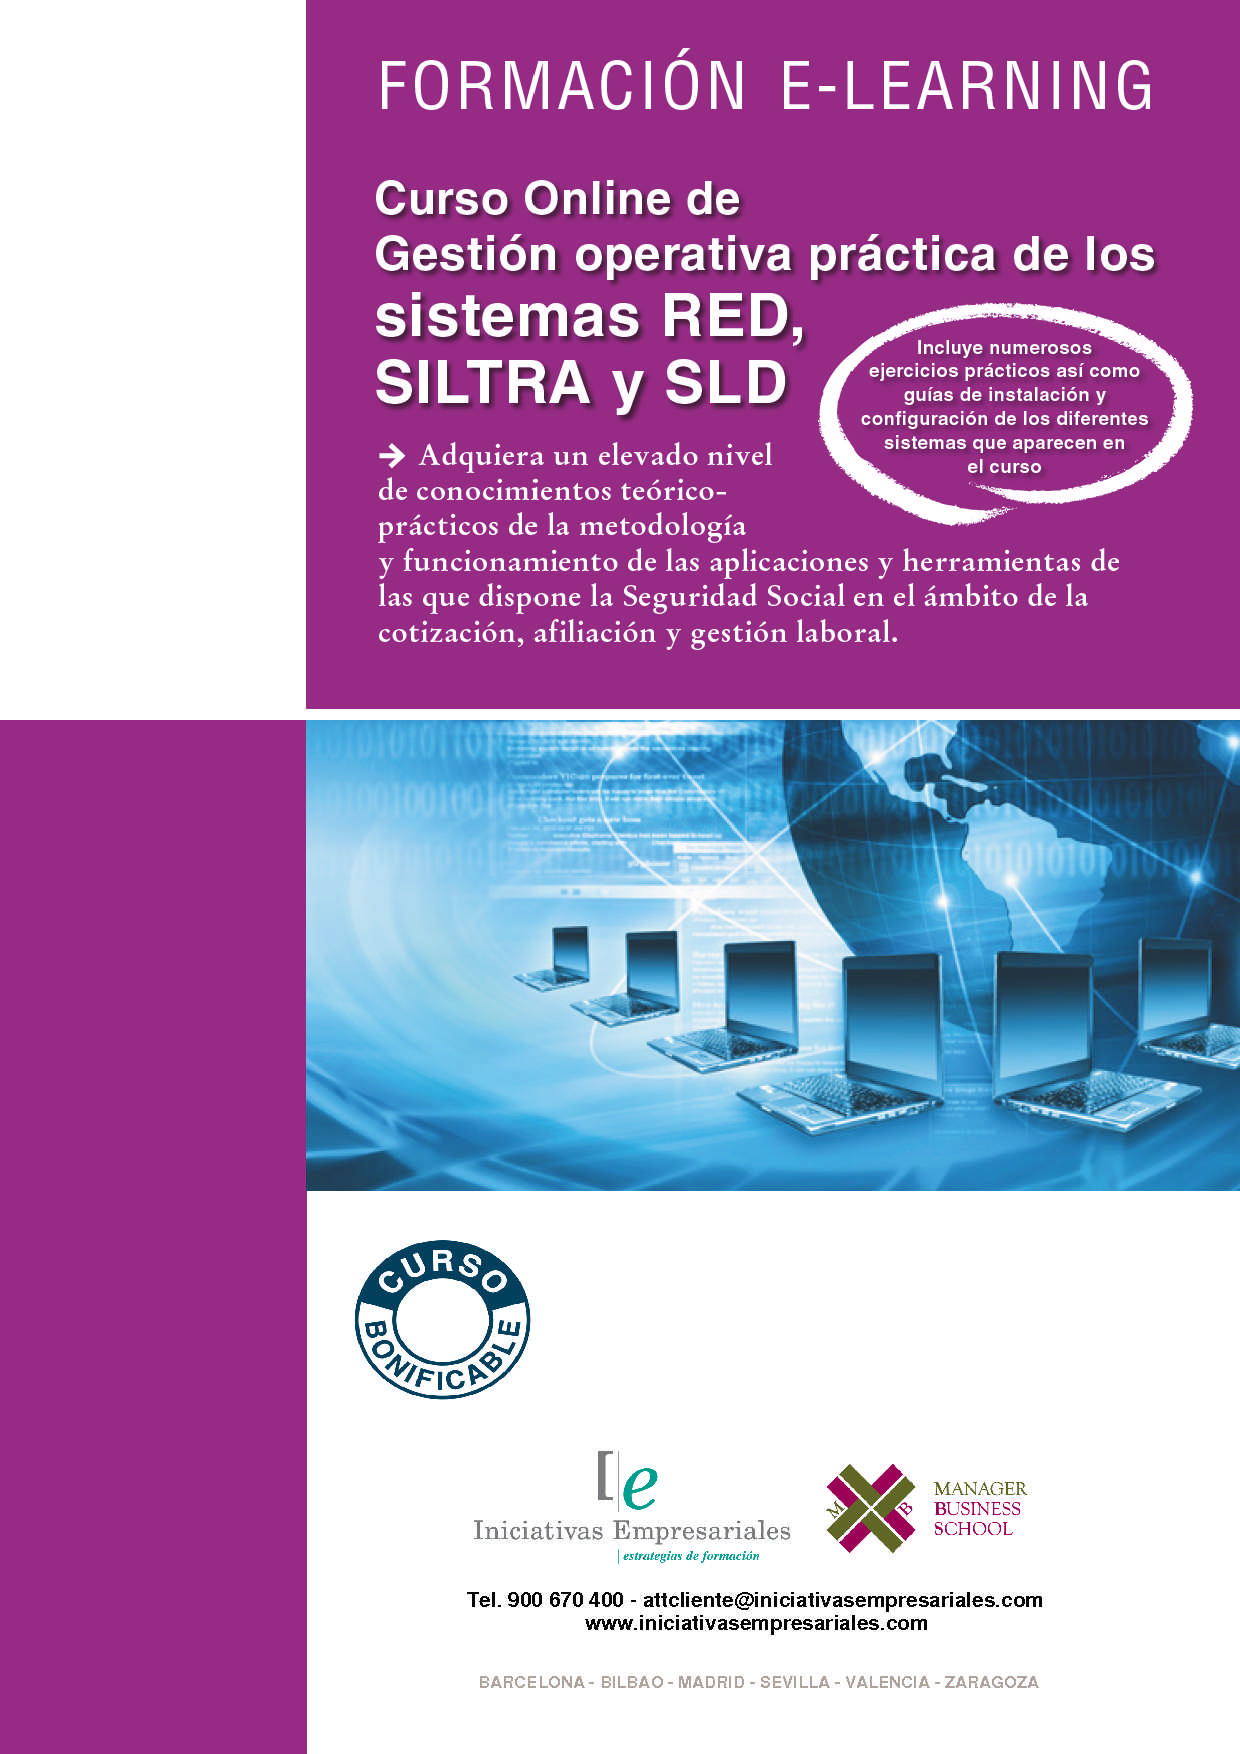 Gestión operativa práctica de los sistemas RED, SILTRA y SLD